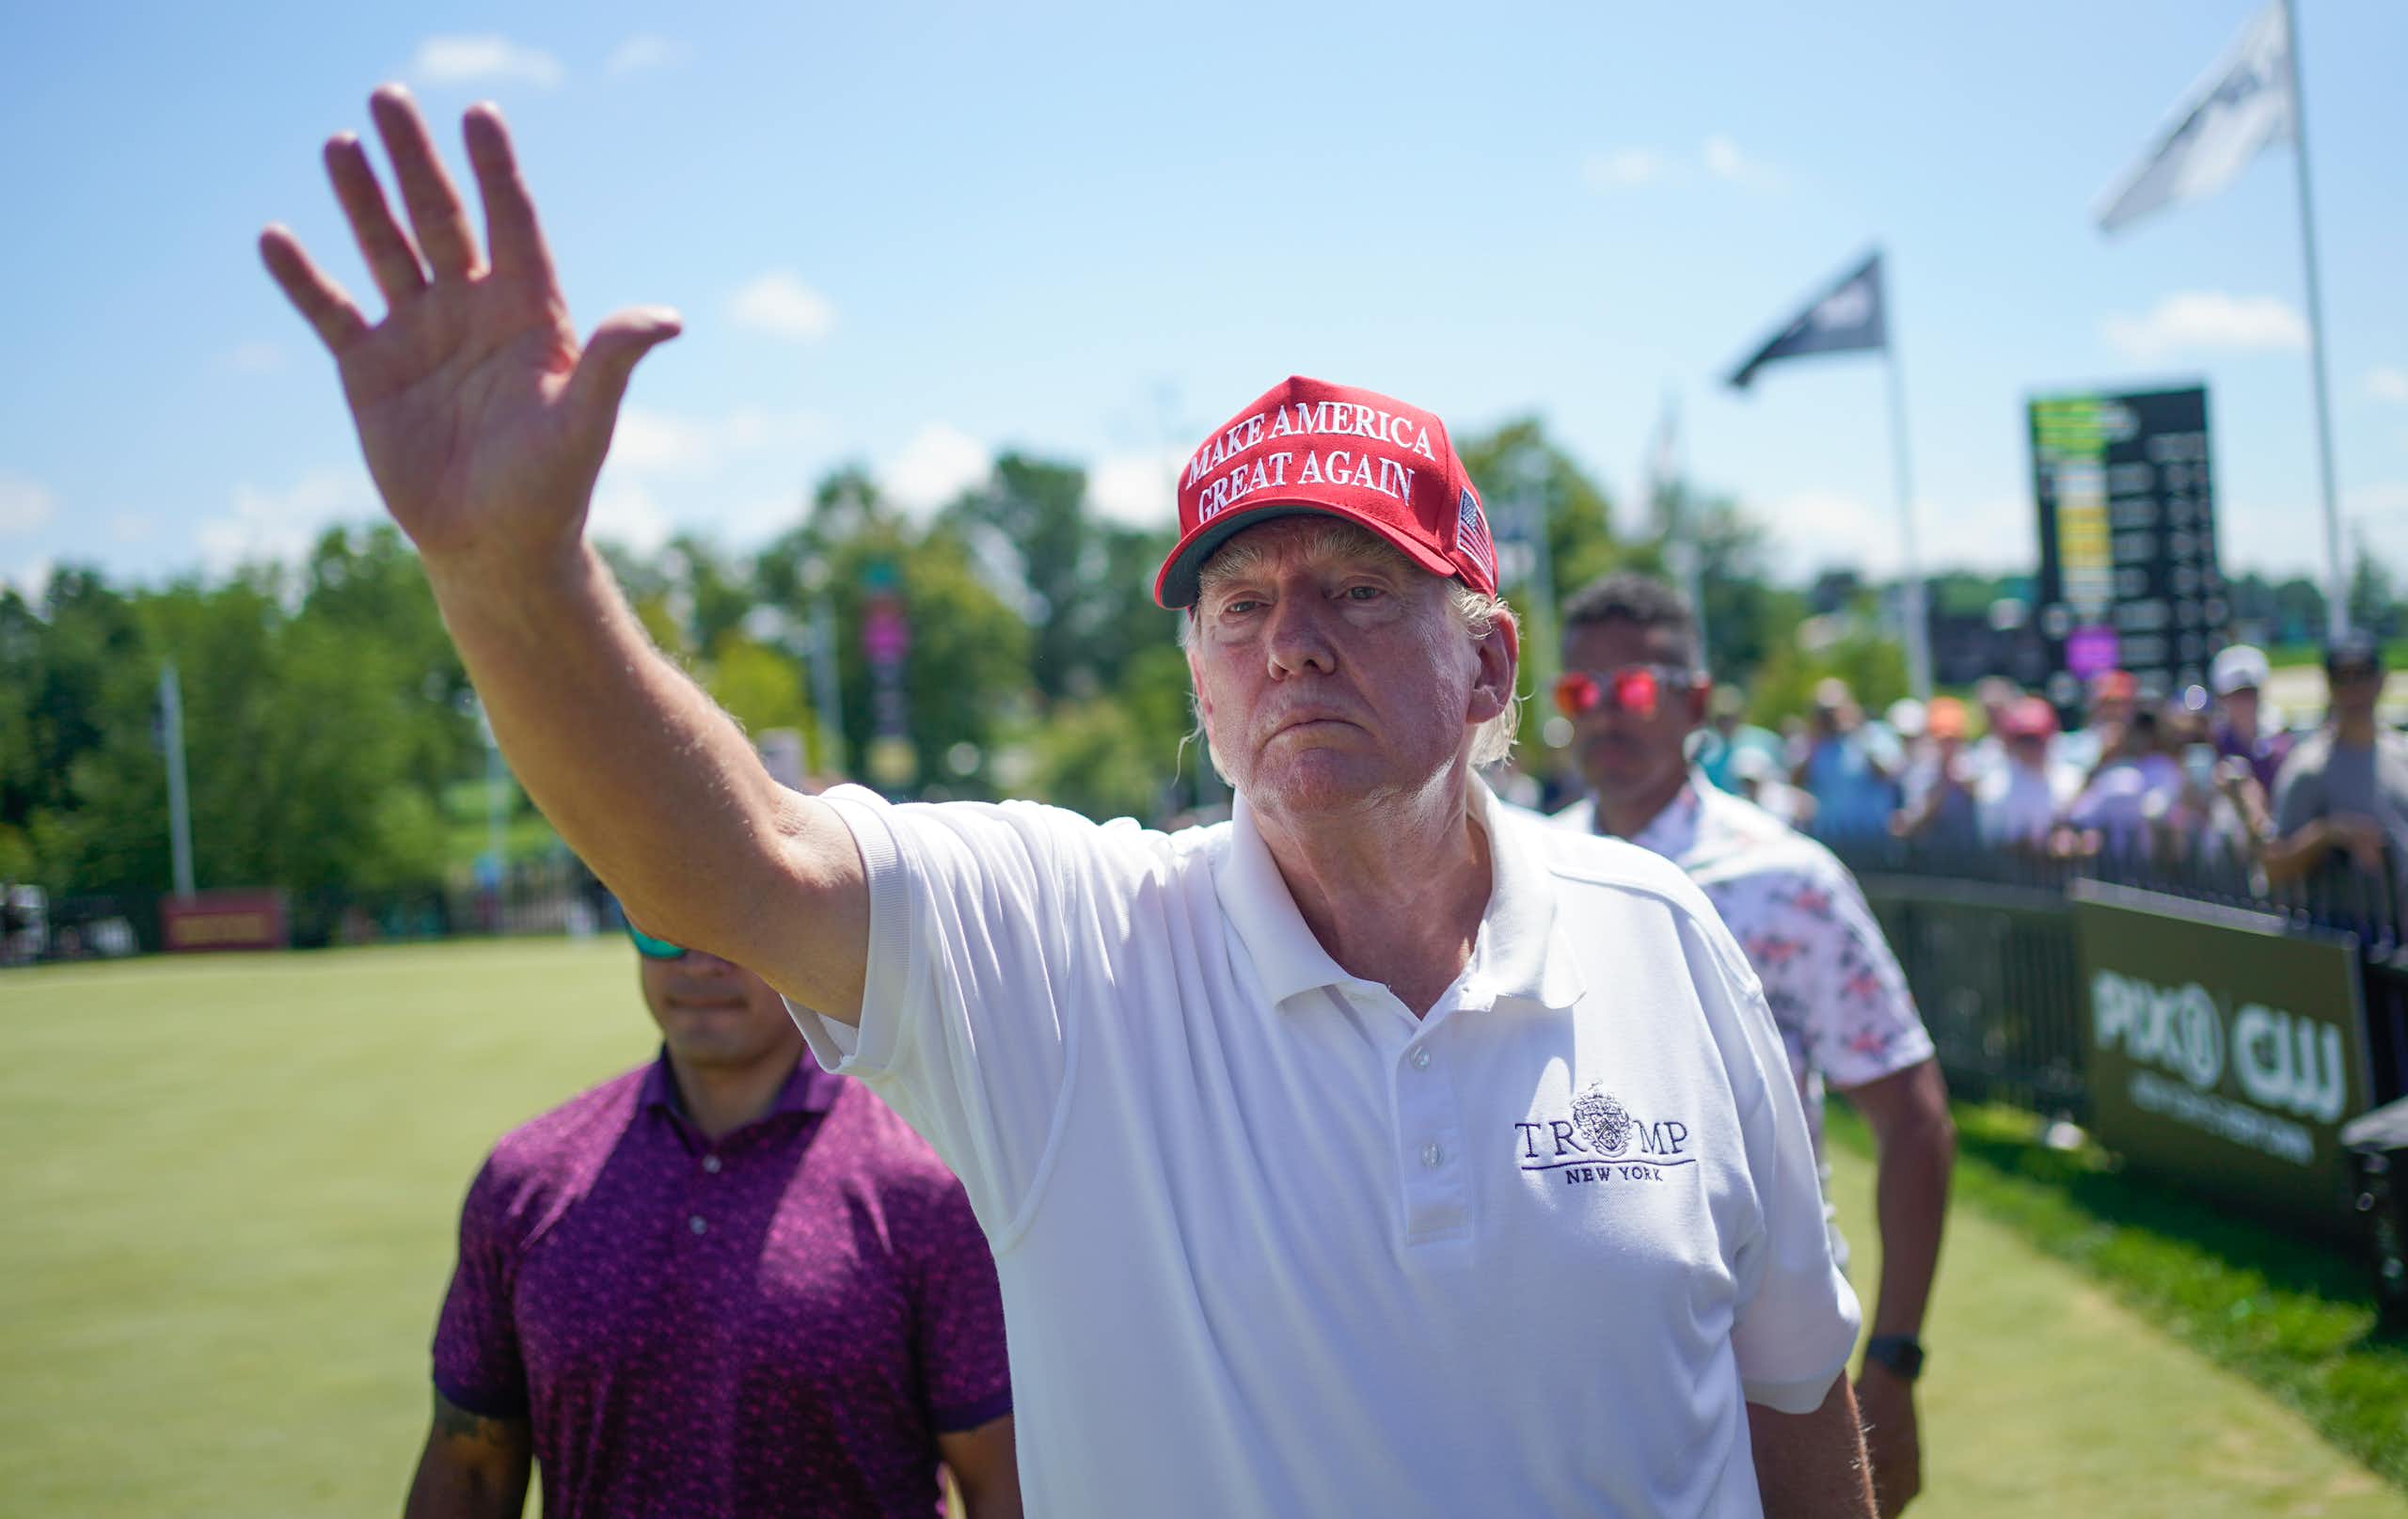 Un homme vêtu d'une chemise de golf blanche et portant une casquette rouge salue sans sourire.